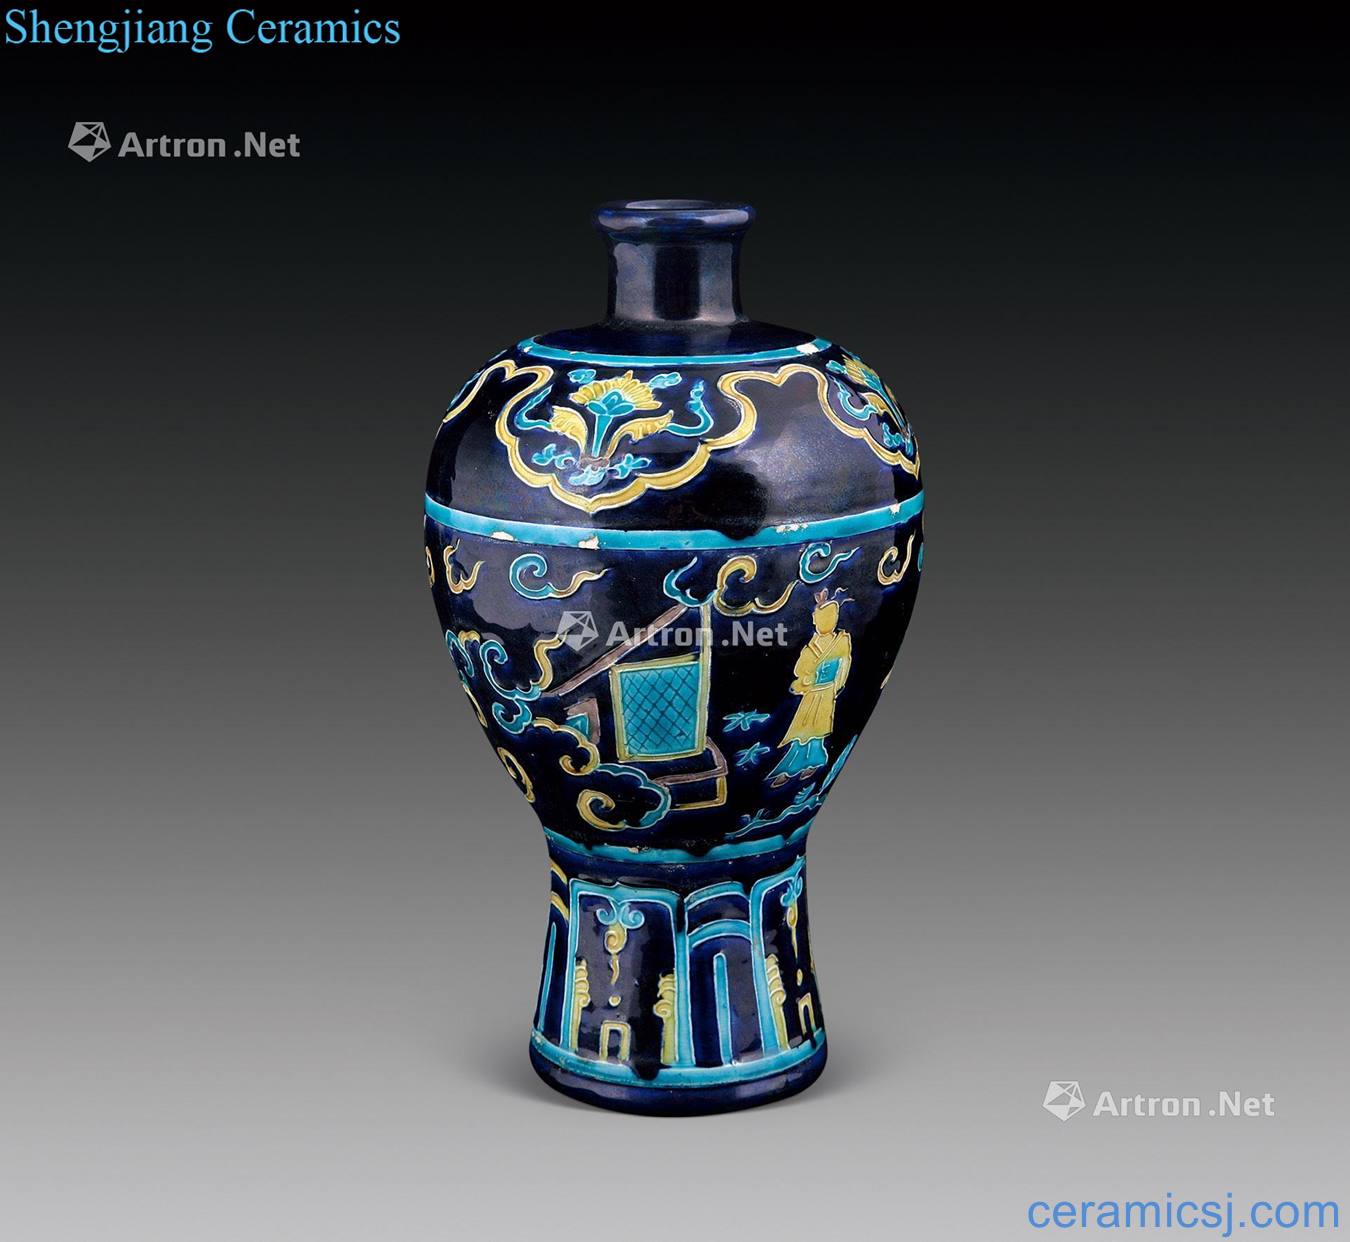 Ming mei bottle falora China glaze characters